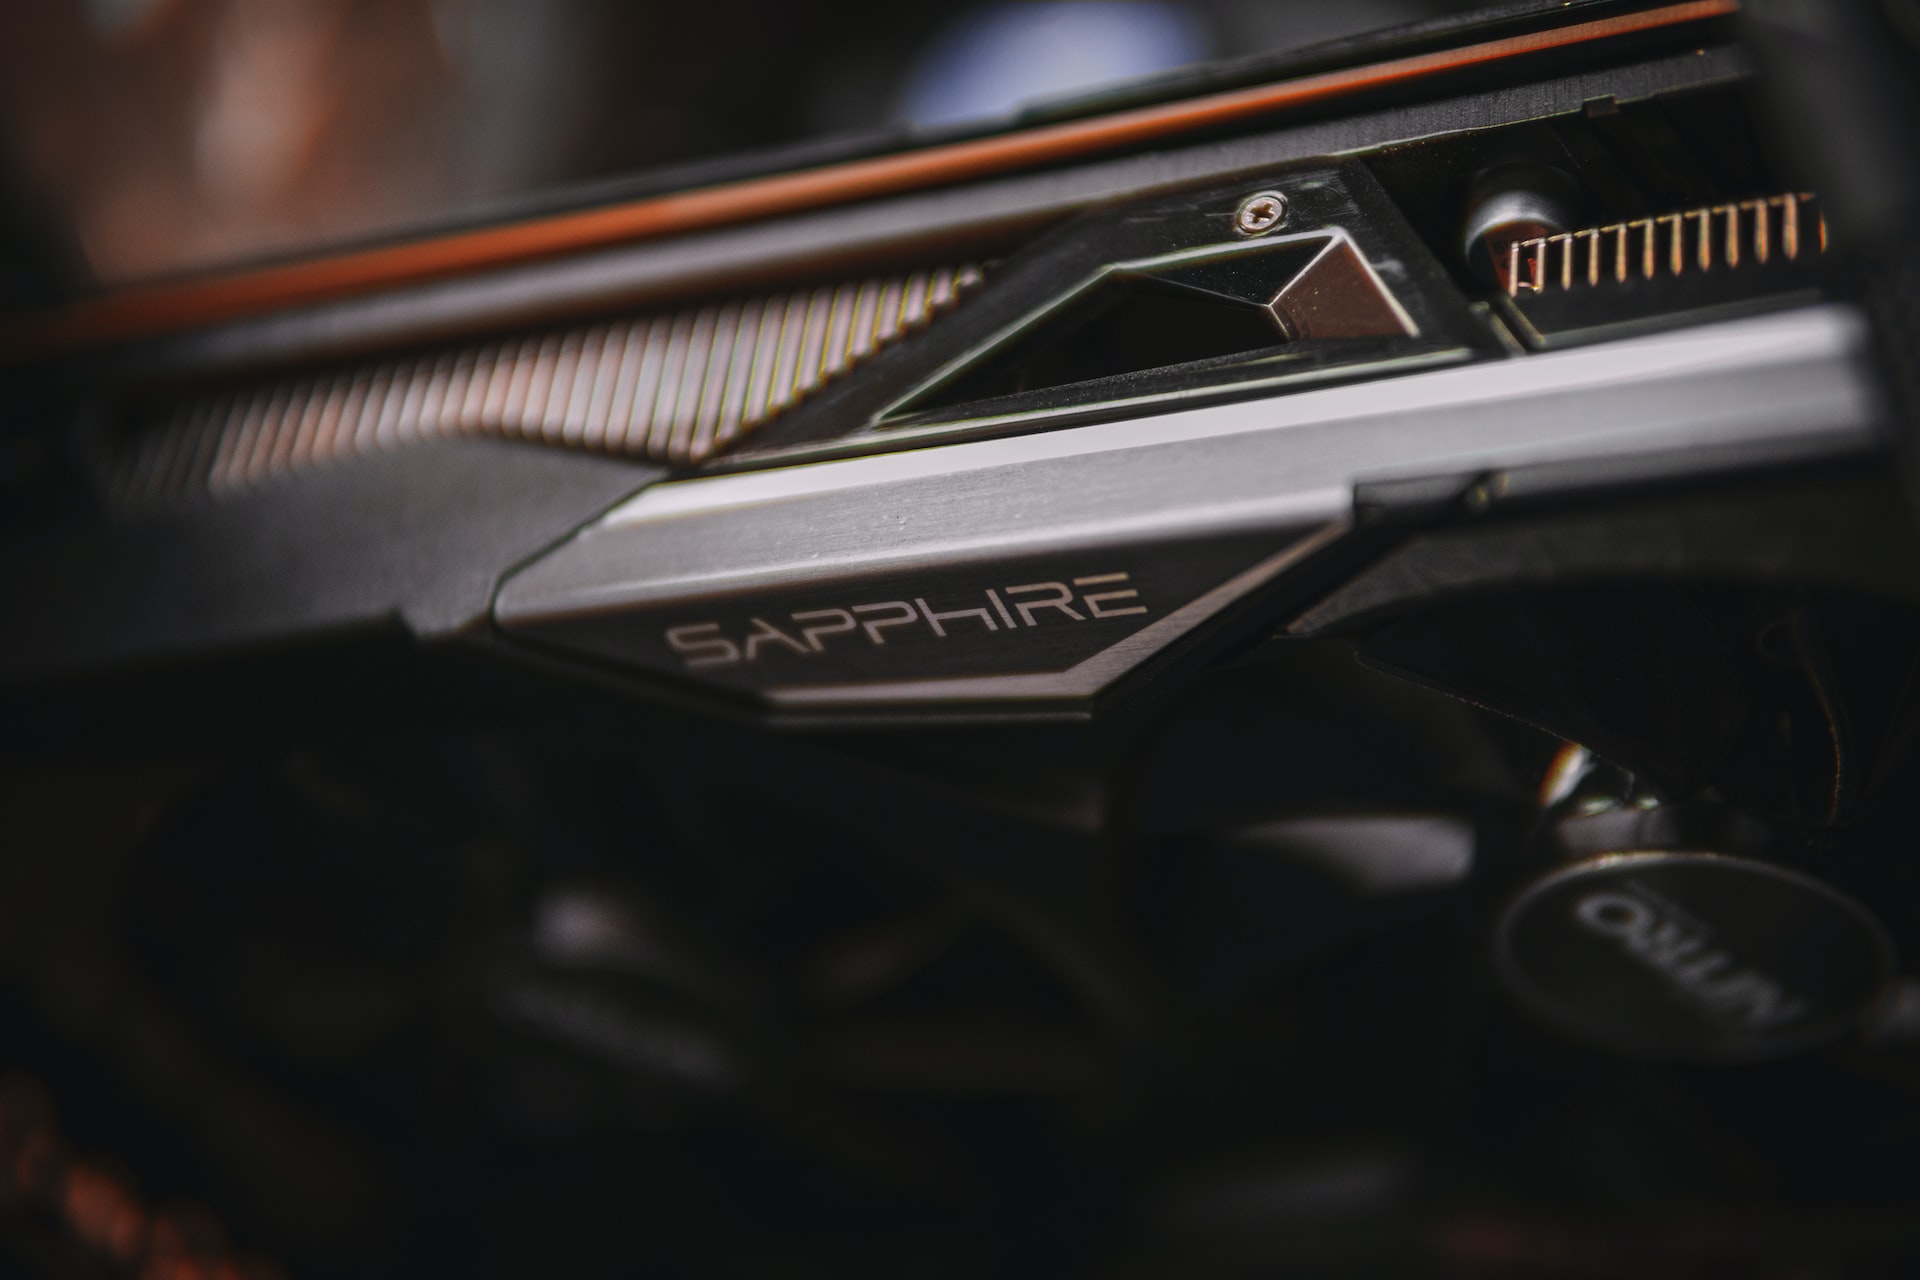 Saphire GPU